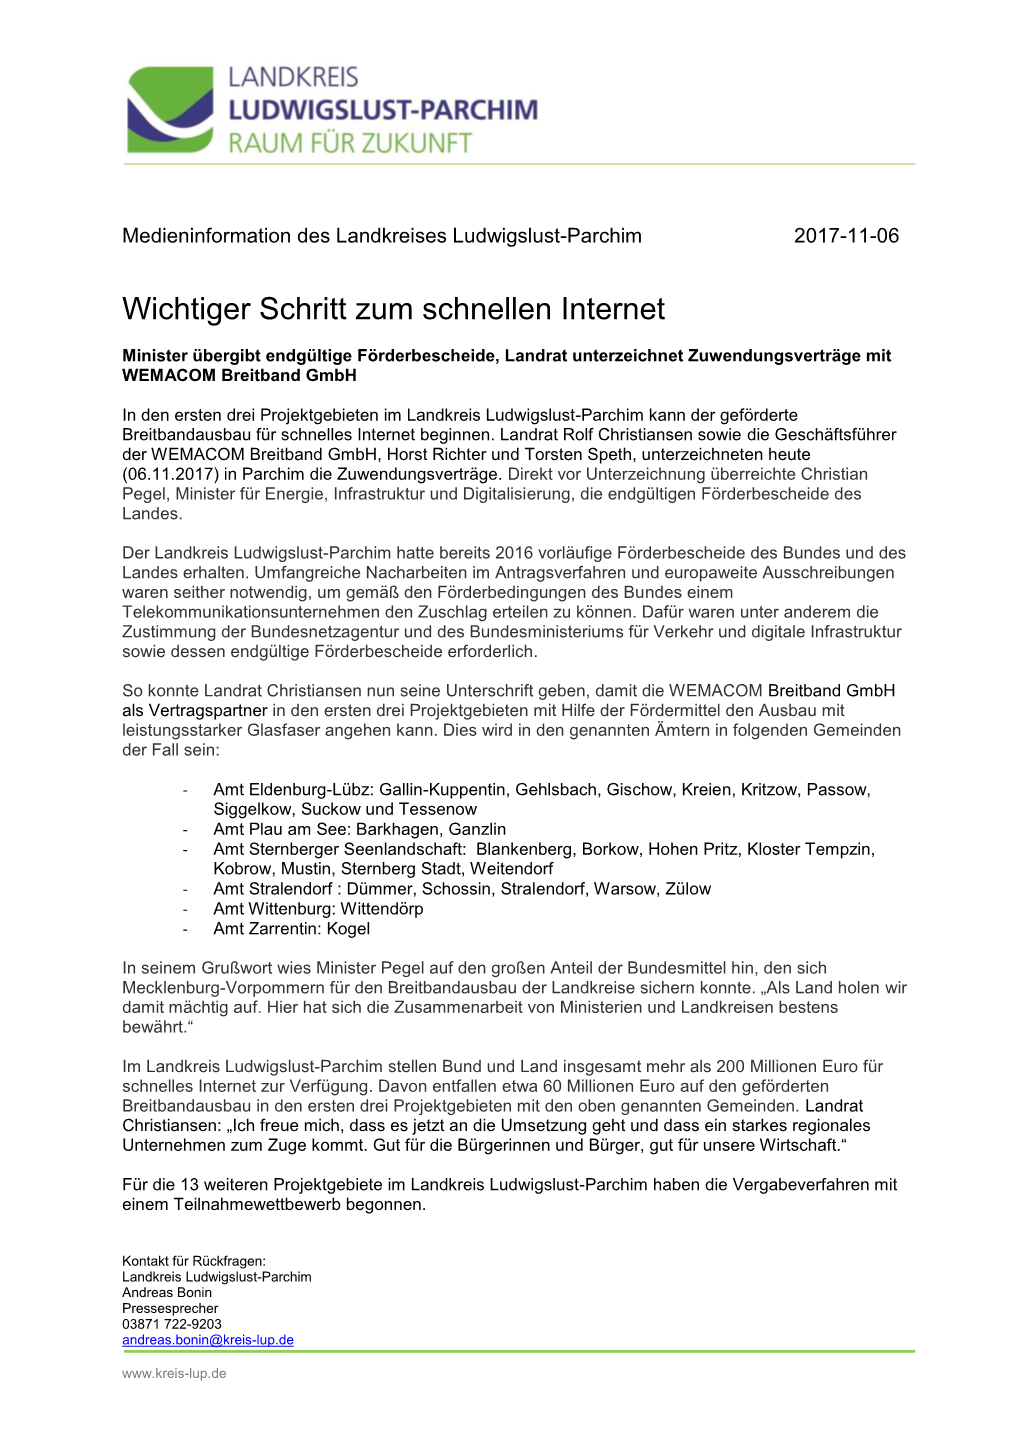 Landkreis Ludwigslust-Parchim Kann Der Geförderte Breitbandausbau Für Schnelles Internet Beginnen